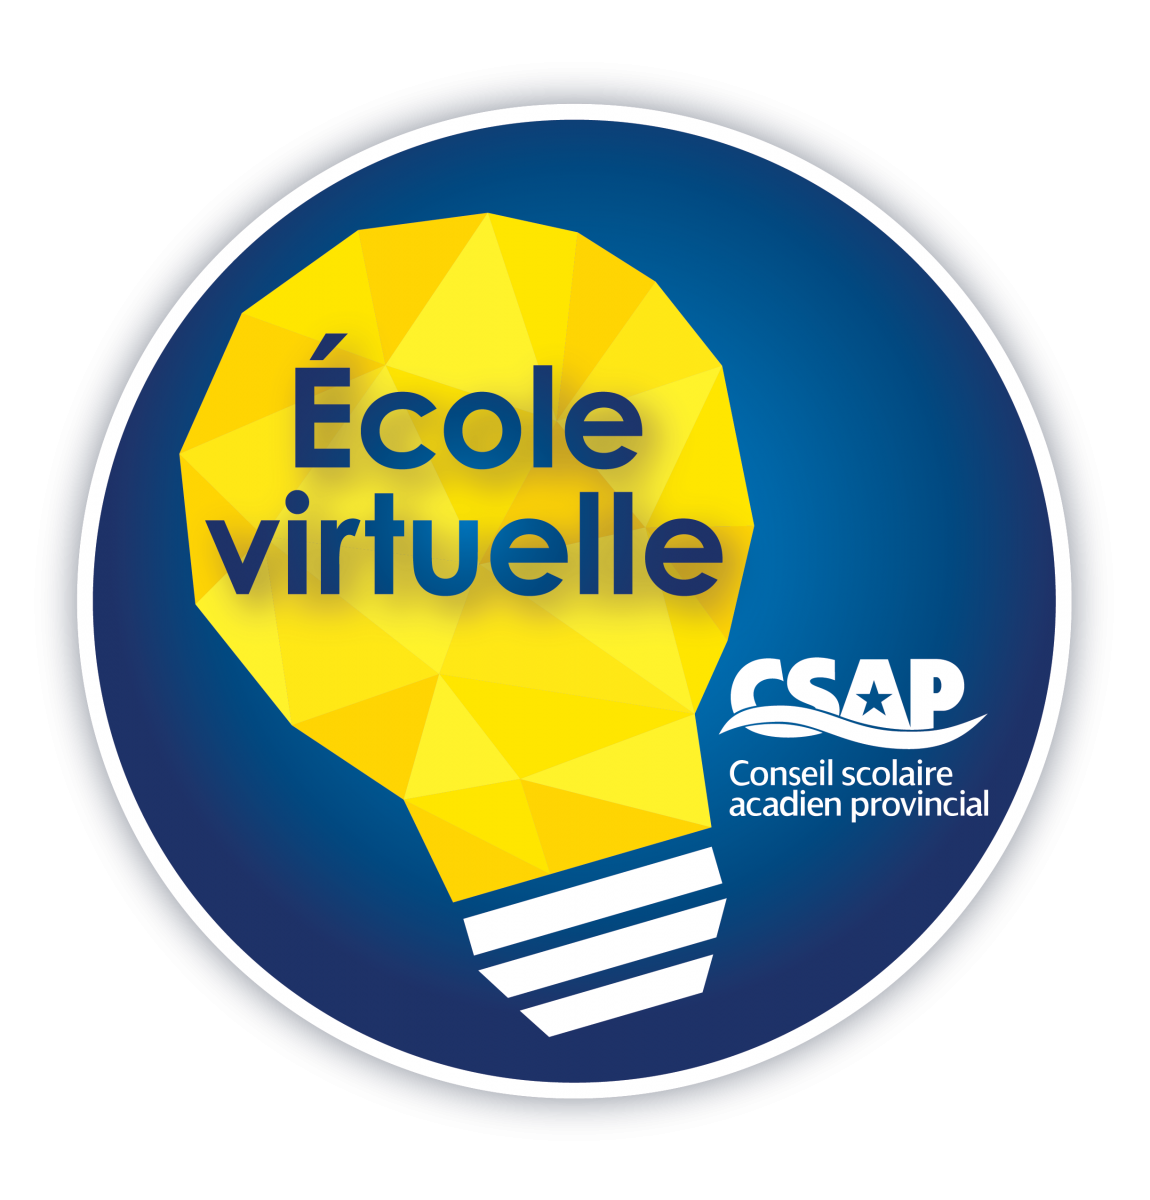 École virtuelle au CSAP (logo)